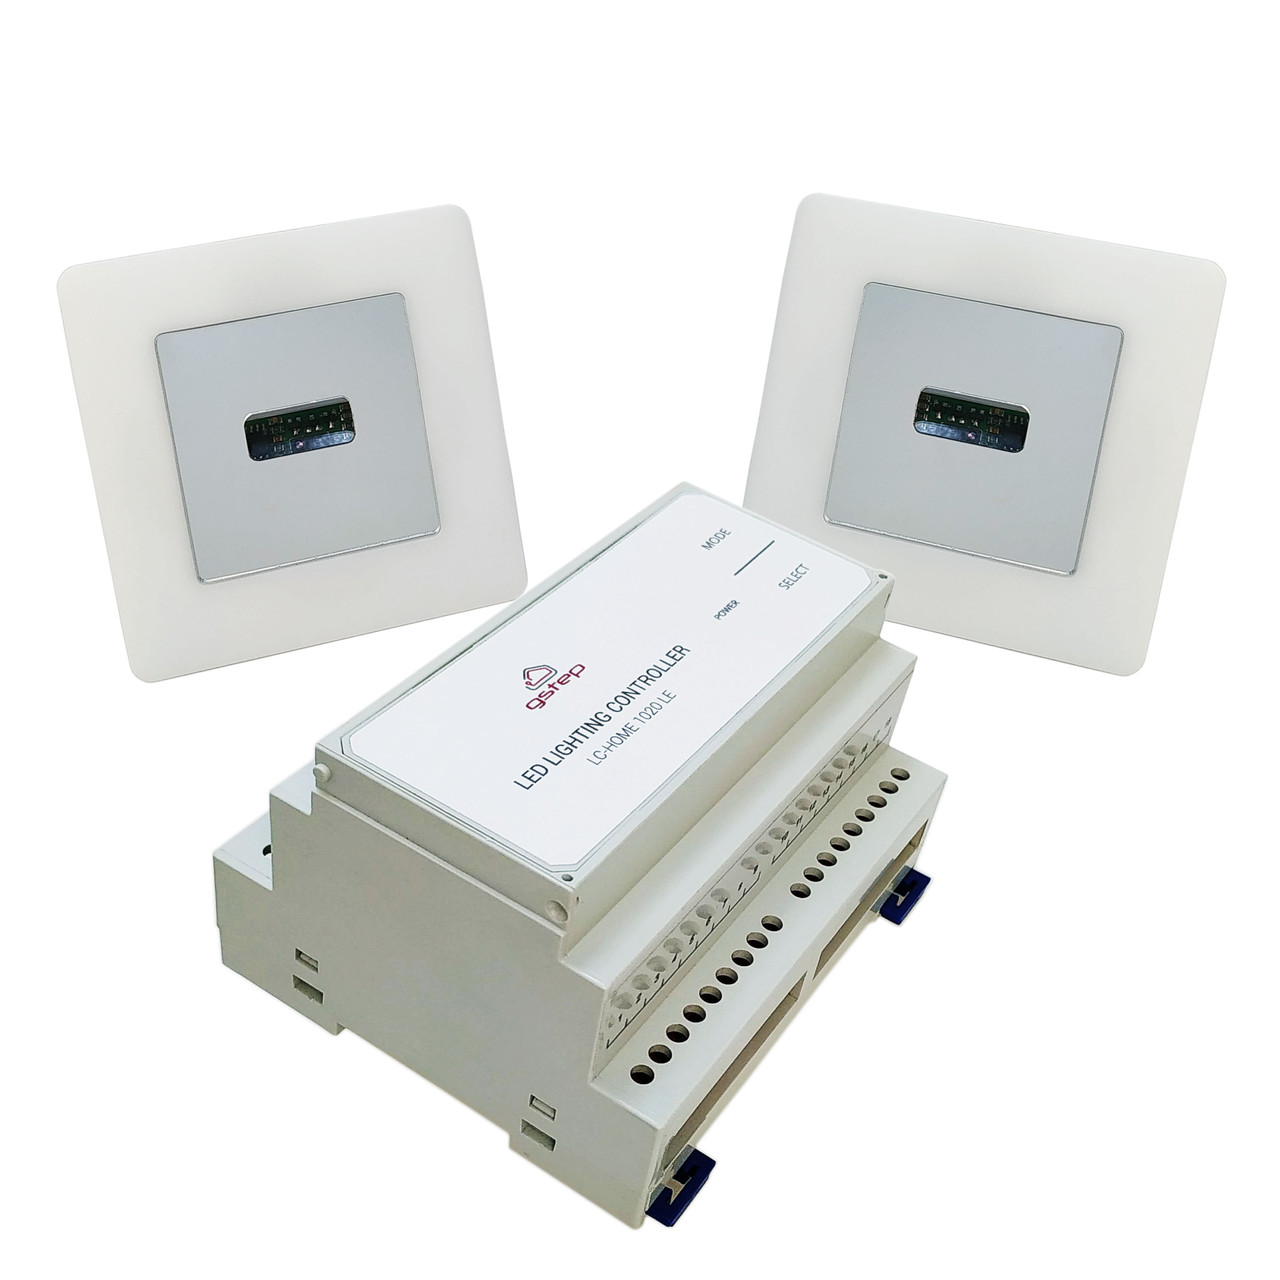 Система автоматической подсветки лестницы Gstep LC-HOME 1020 LE (комплект с двумя датчиками), фото 1